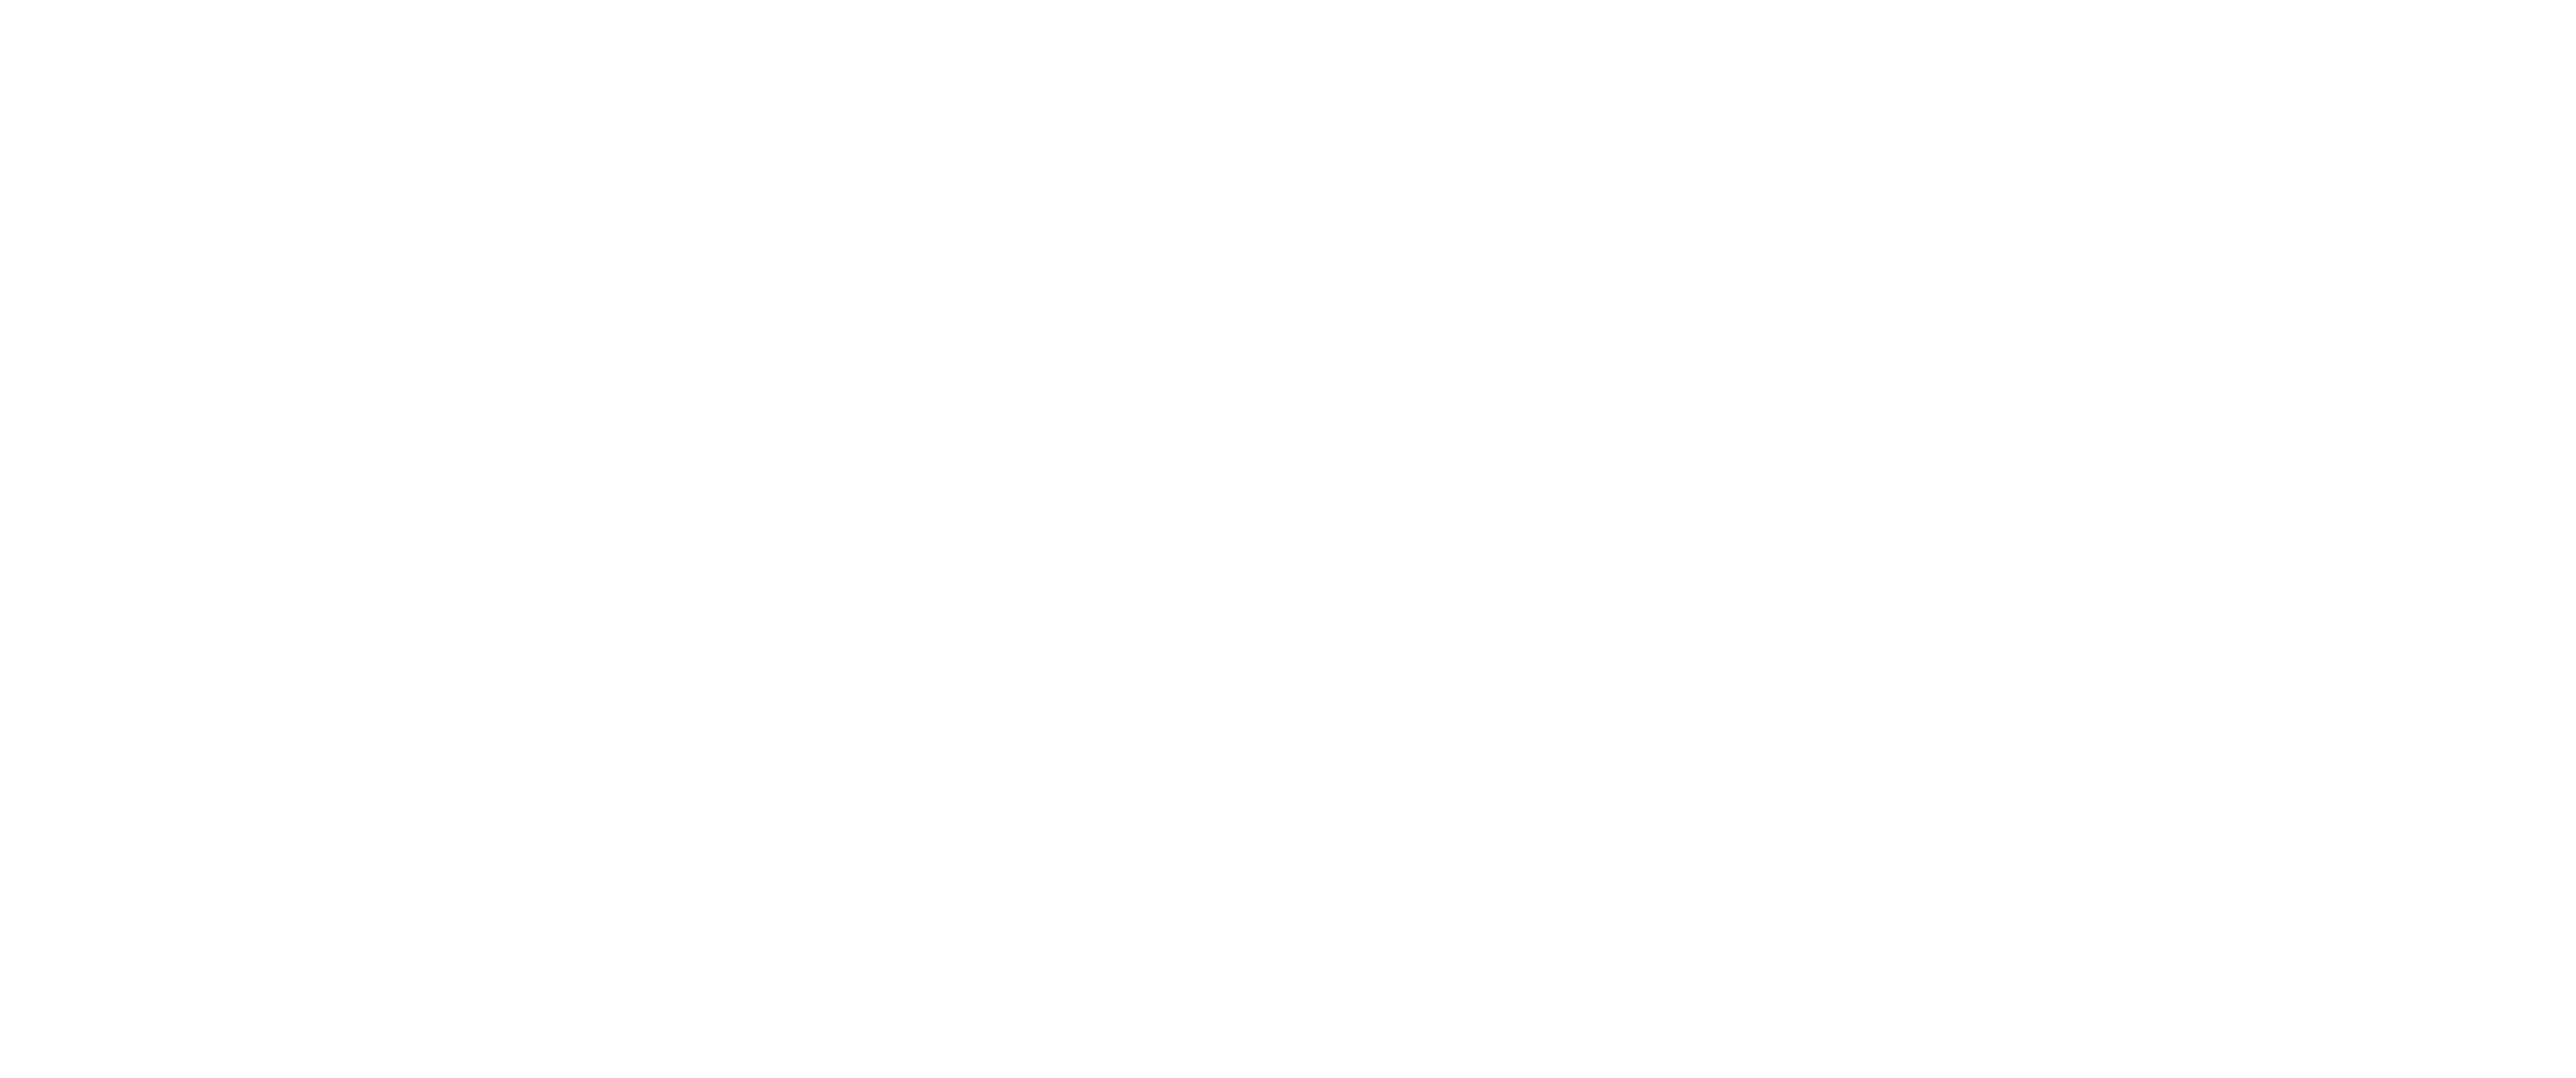 Chris Fisioderm